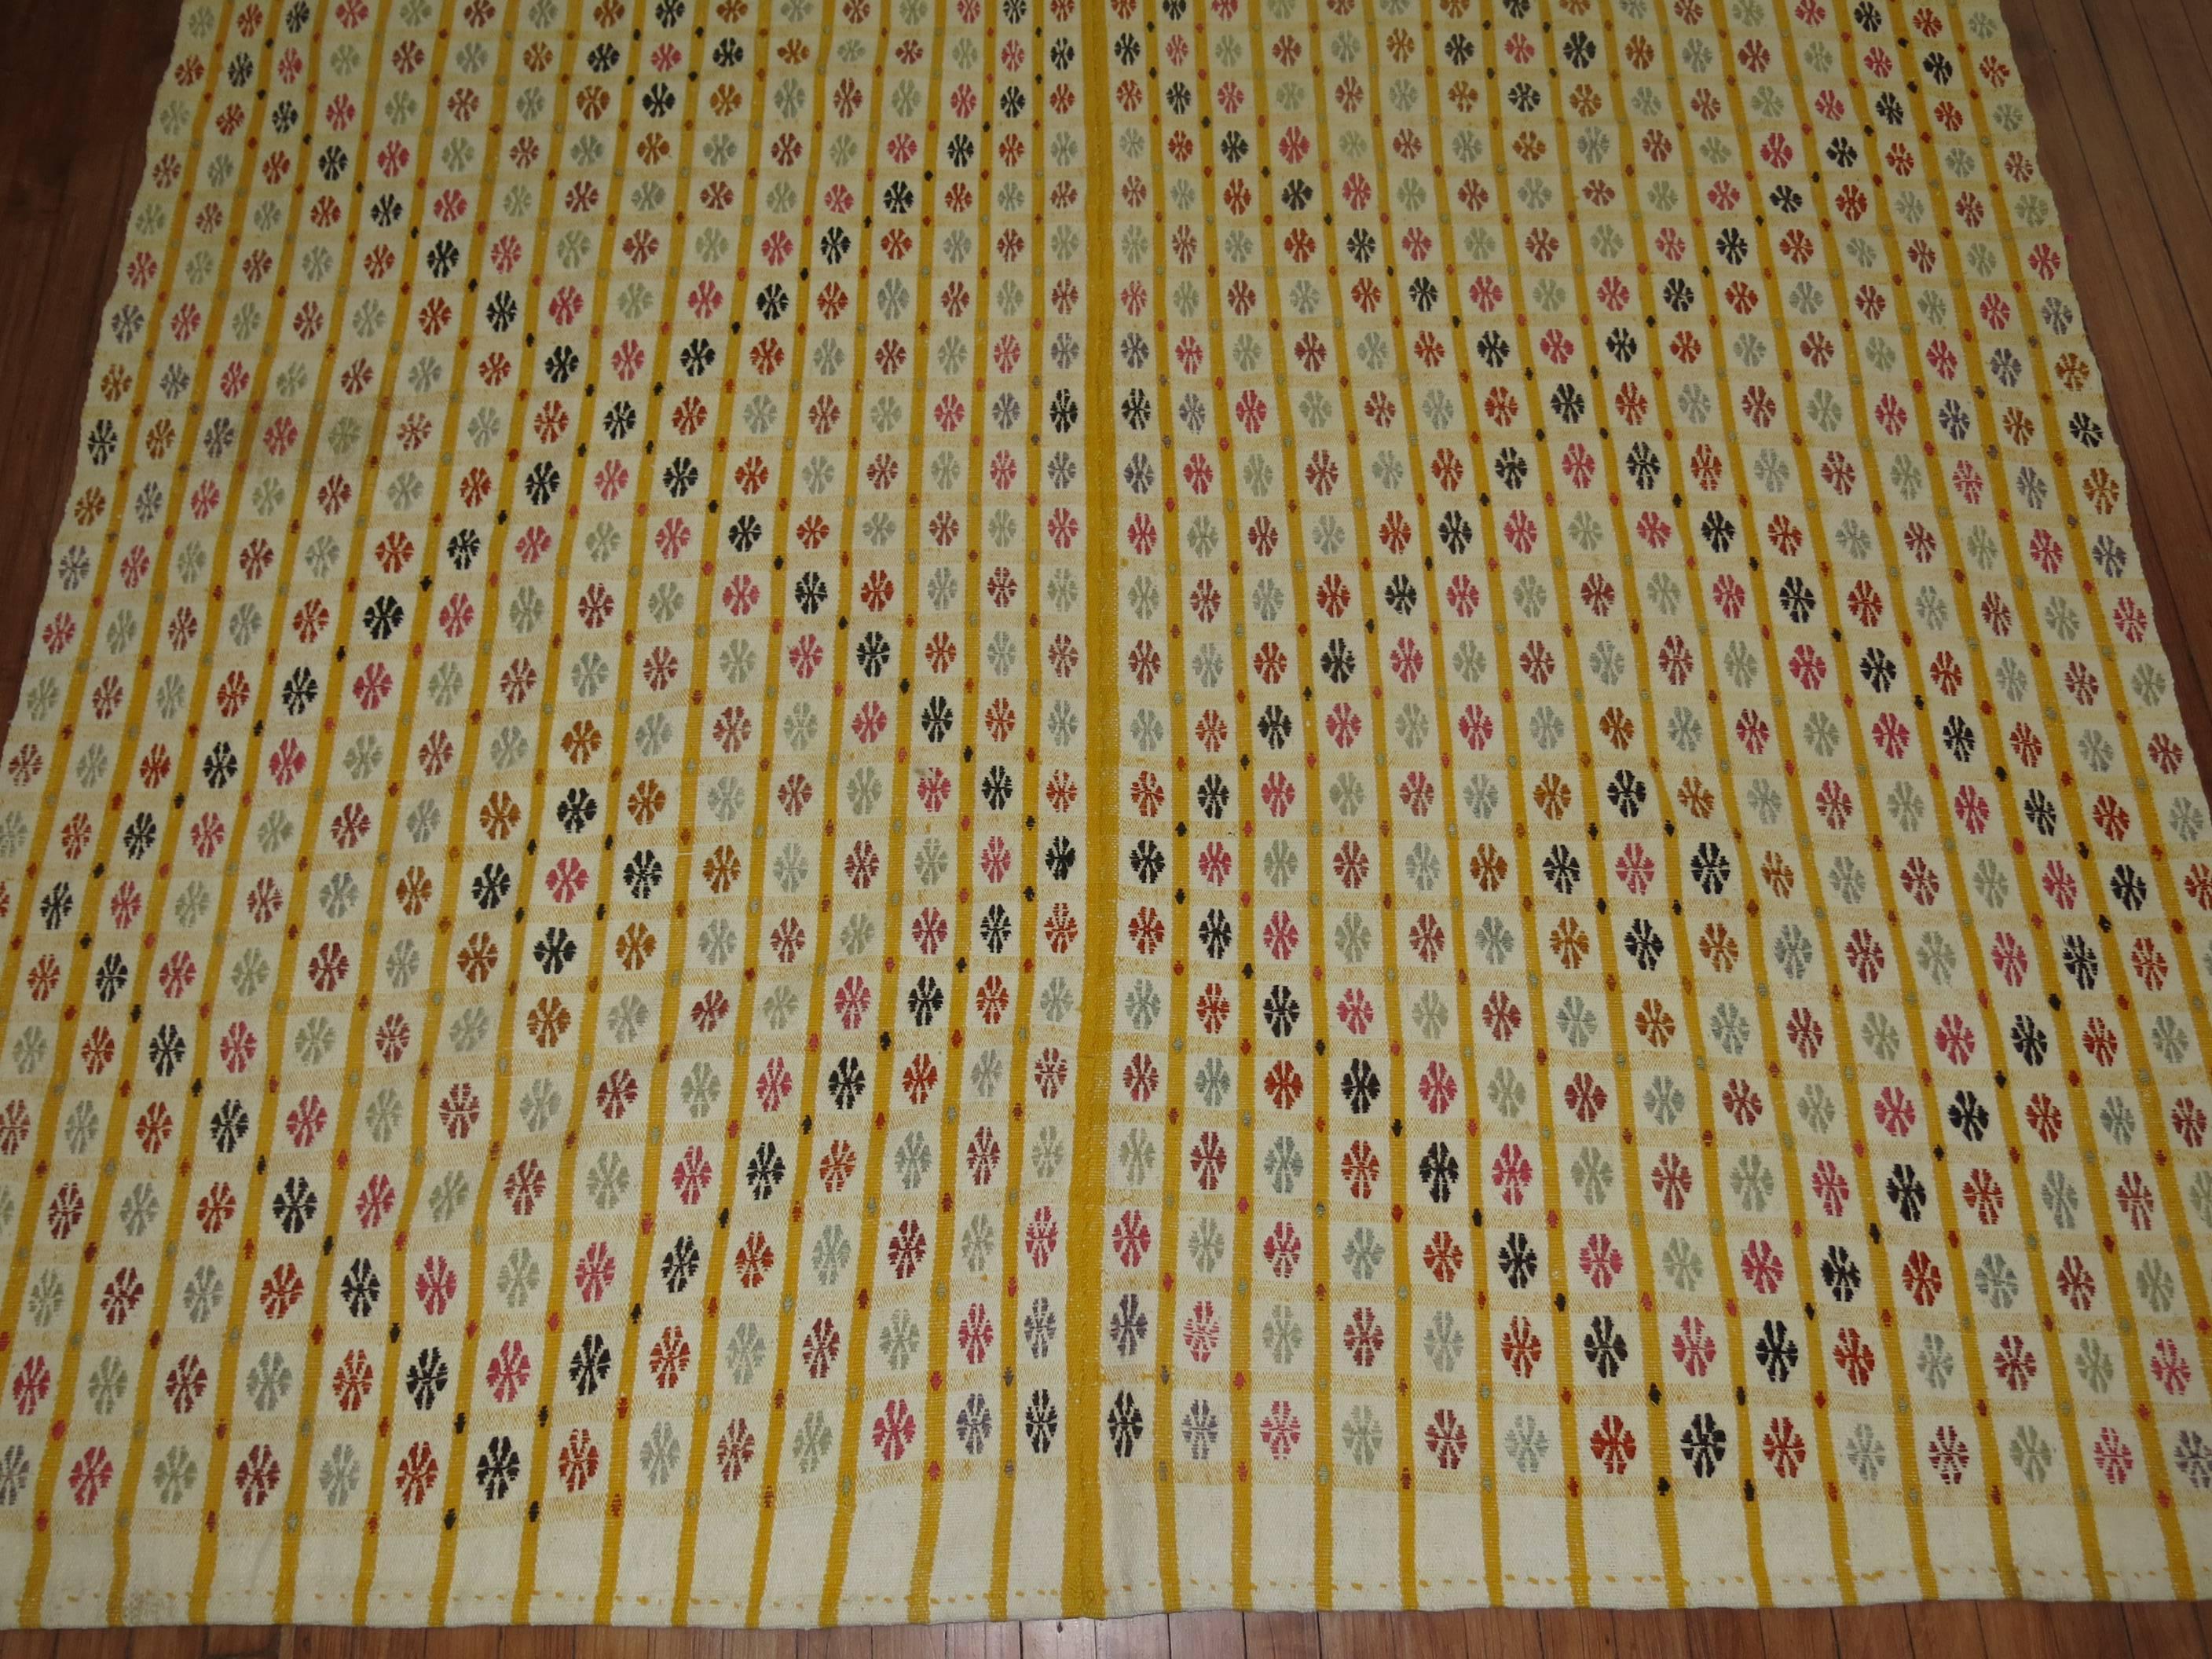 Ein farbenfrohes geometrisches Flachgewebe aus dem südlichen Teil der Türkei, das in Jajim/Cicim-Technik gewebt wurde.

Maße: 6'10'' x 9'10''

Türkische Cicims werden hauptsächlich als Vorhänge oder Decken verwendet. Die Schuss- und Kettfäden,